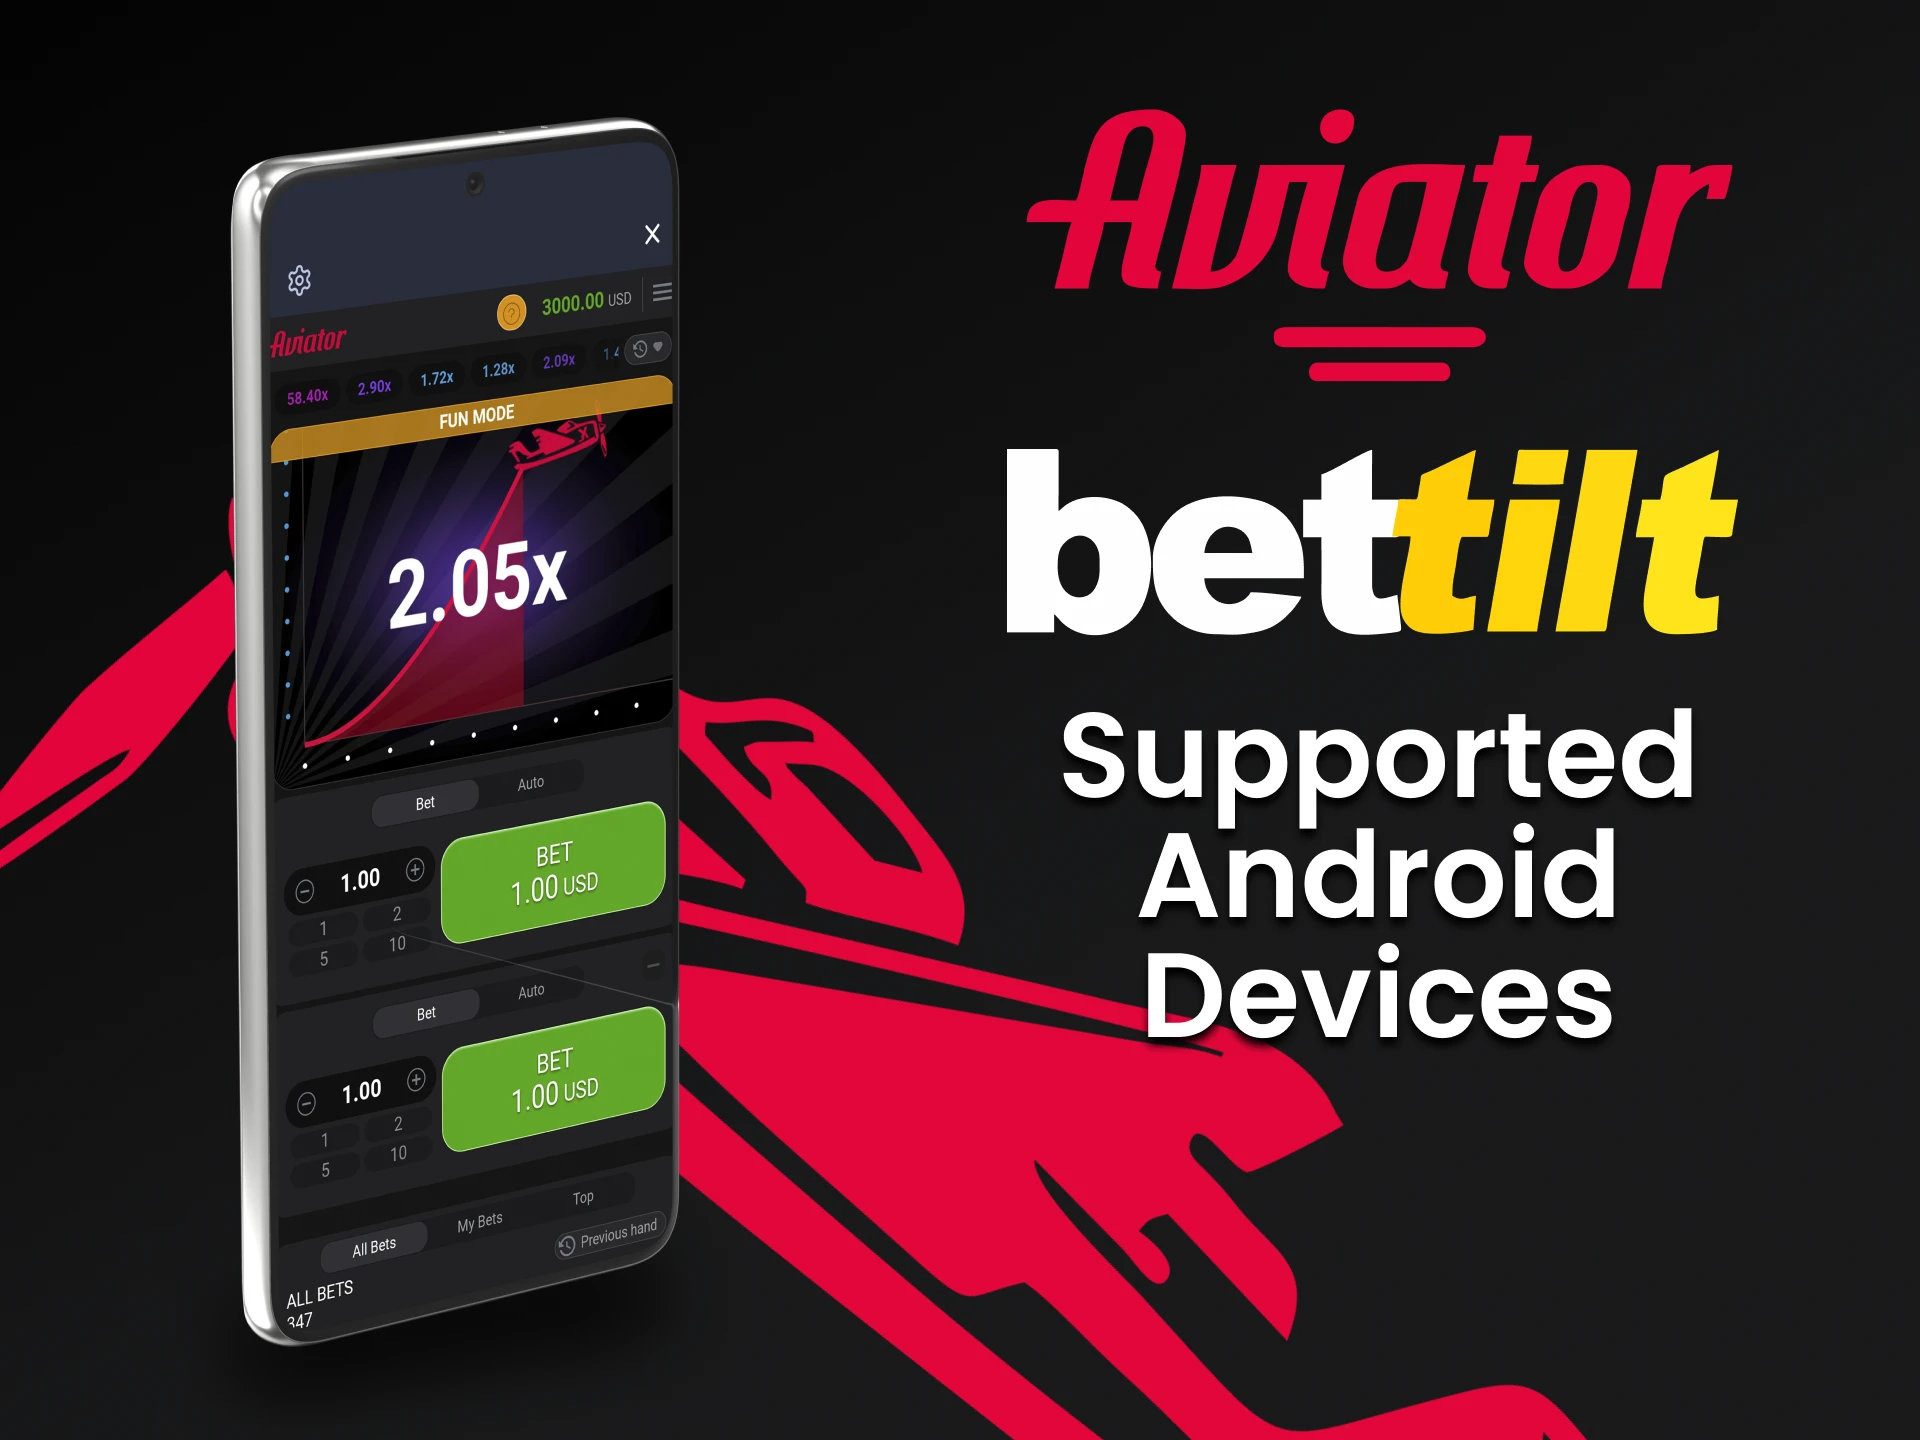 Use seu dispositivo Android para jogar Aviator no Bettilt.